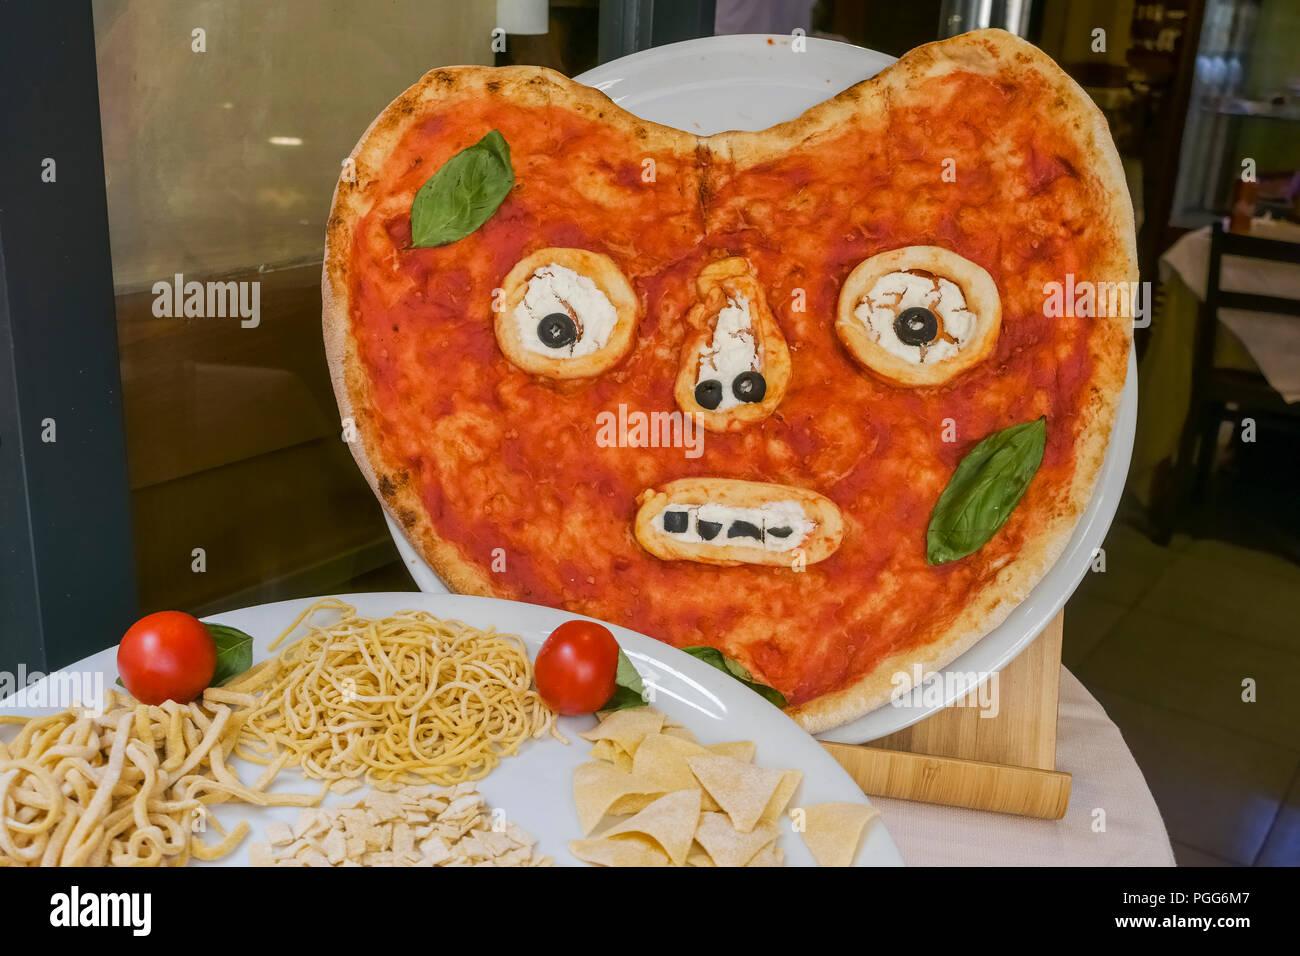 Pizza au visage drôle exposée, comme publicité, devant un restaurant pizzeria italien. Rome, Italie, Europe, Union européenne, UE. Banque D'Images